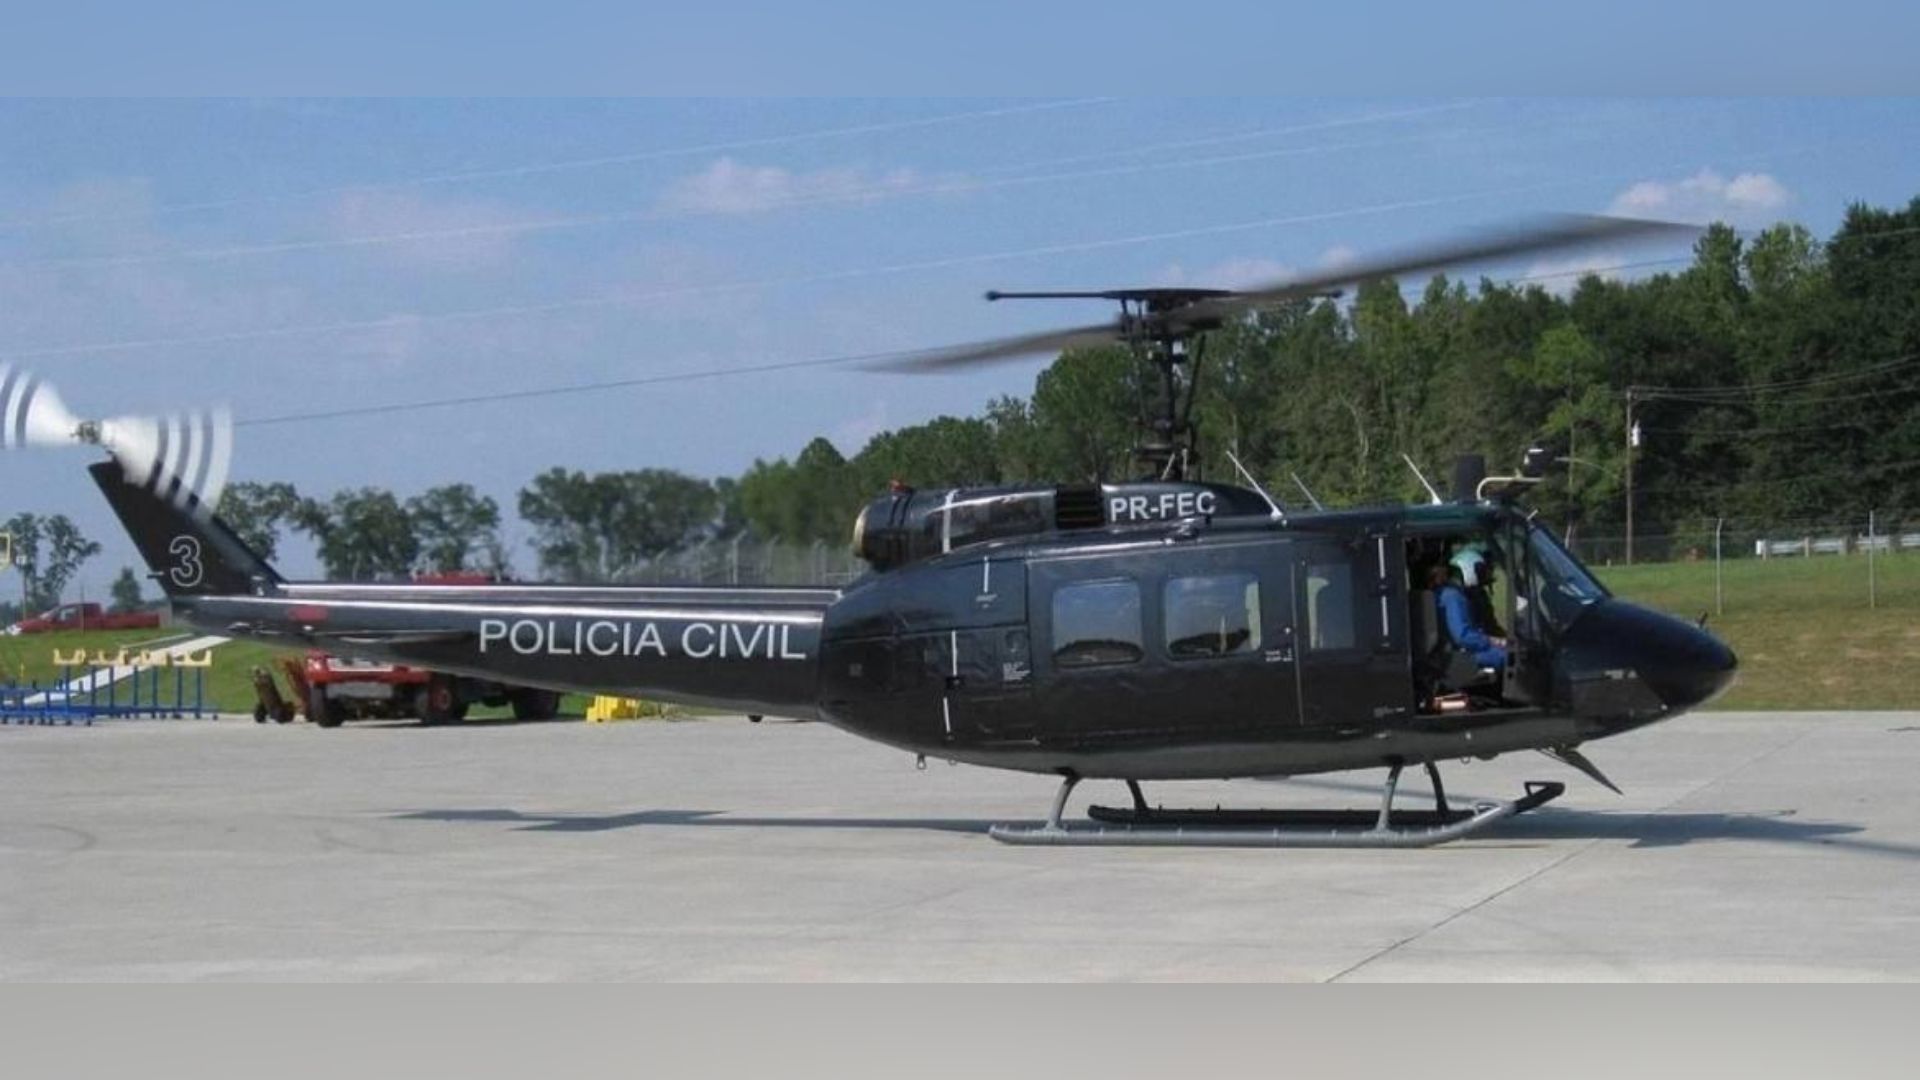 Caveirão voador também serviu na força de segurança pública nos EUA - Foto: Divulgação/PC-RJ